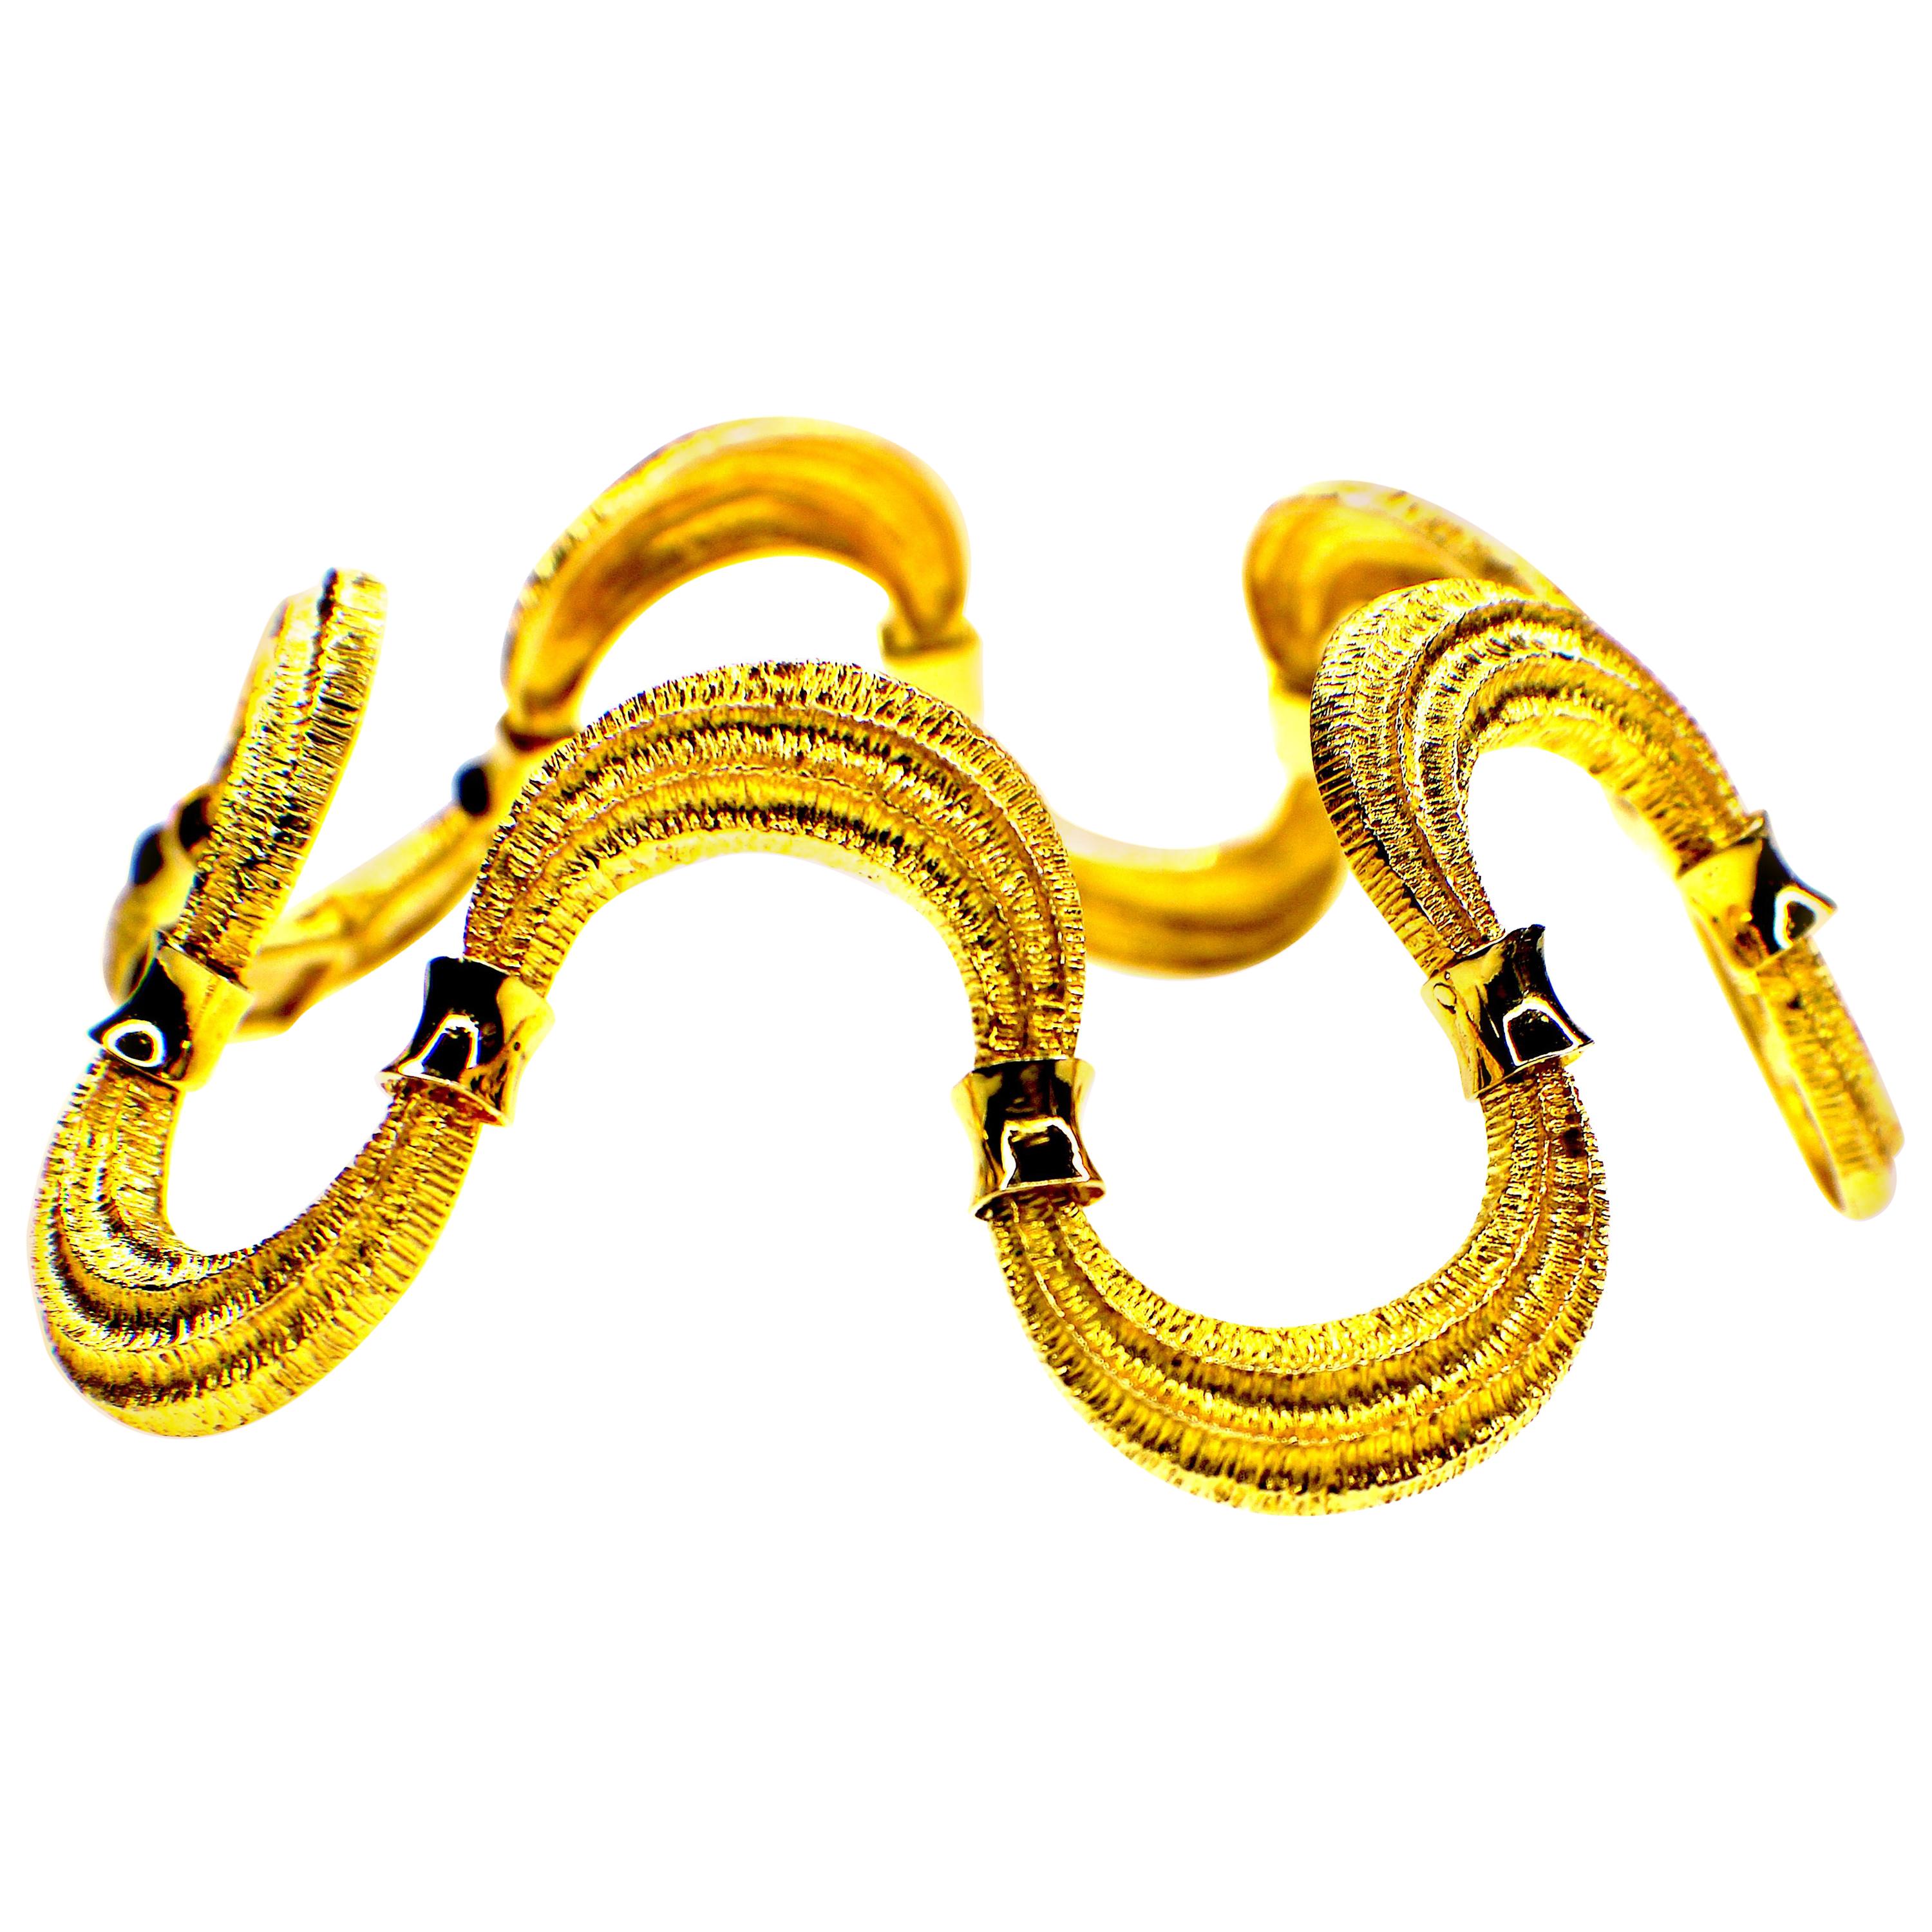 Bracelet "Waves" Handcrafted 18 Karat Gold